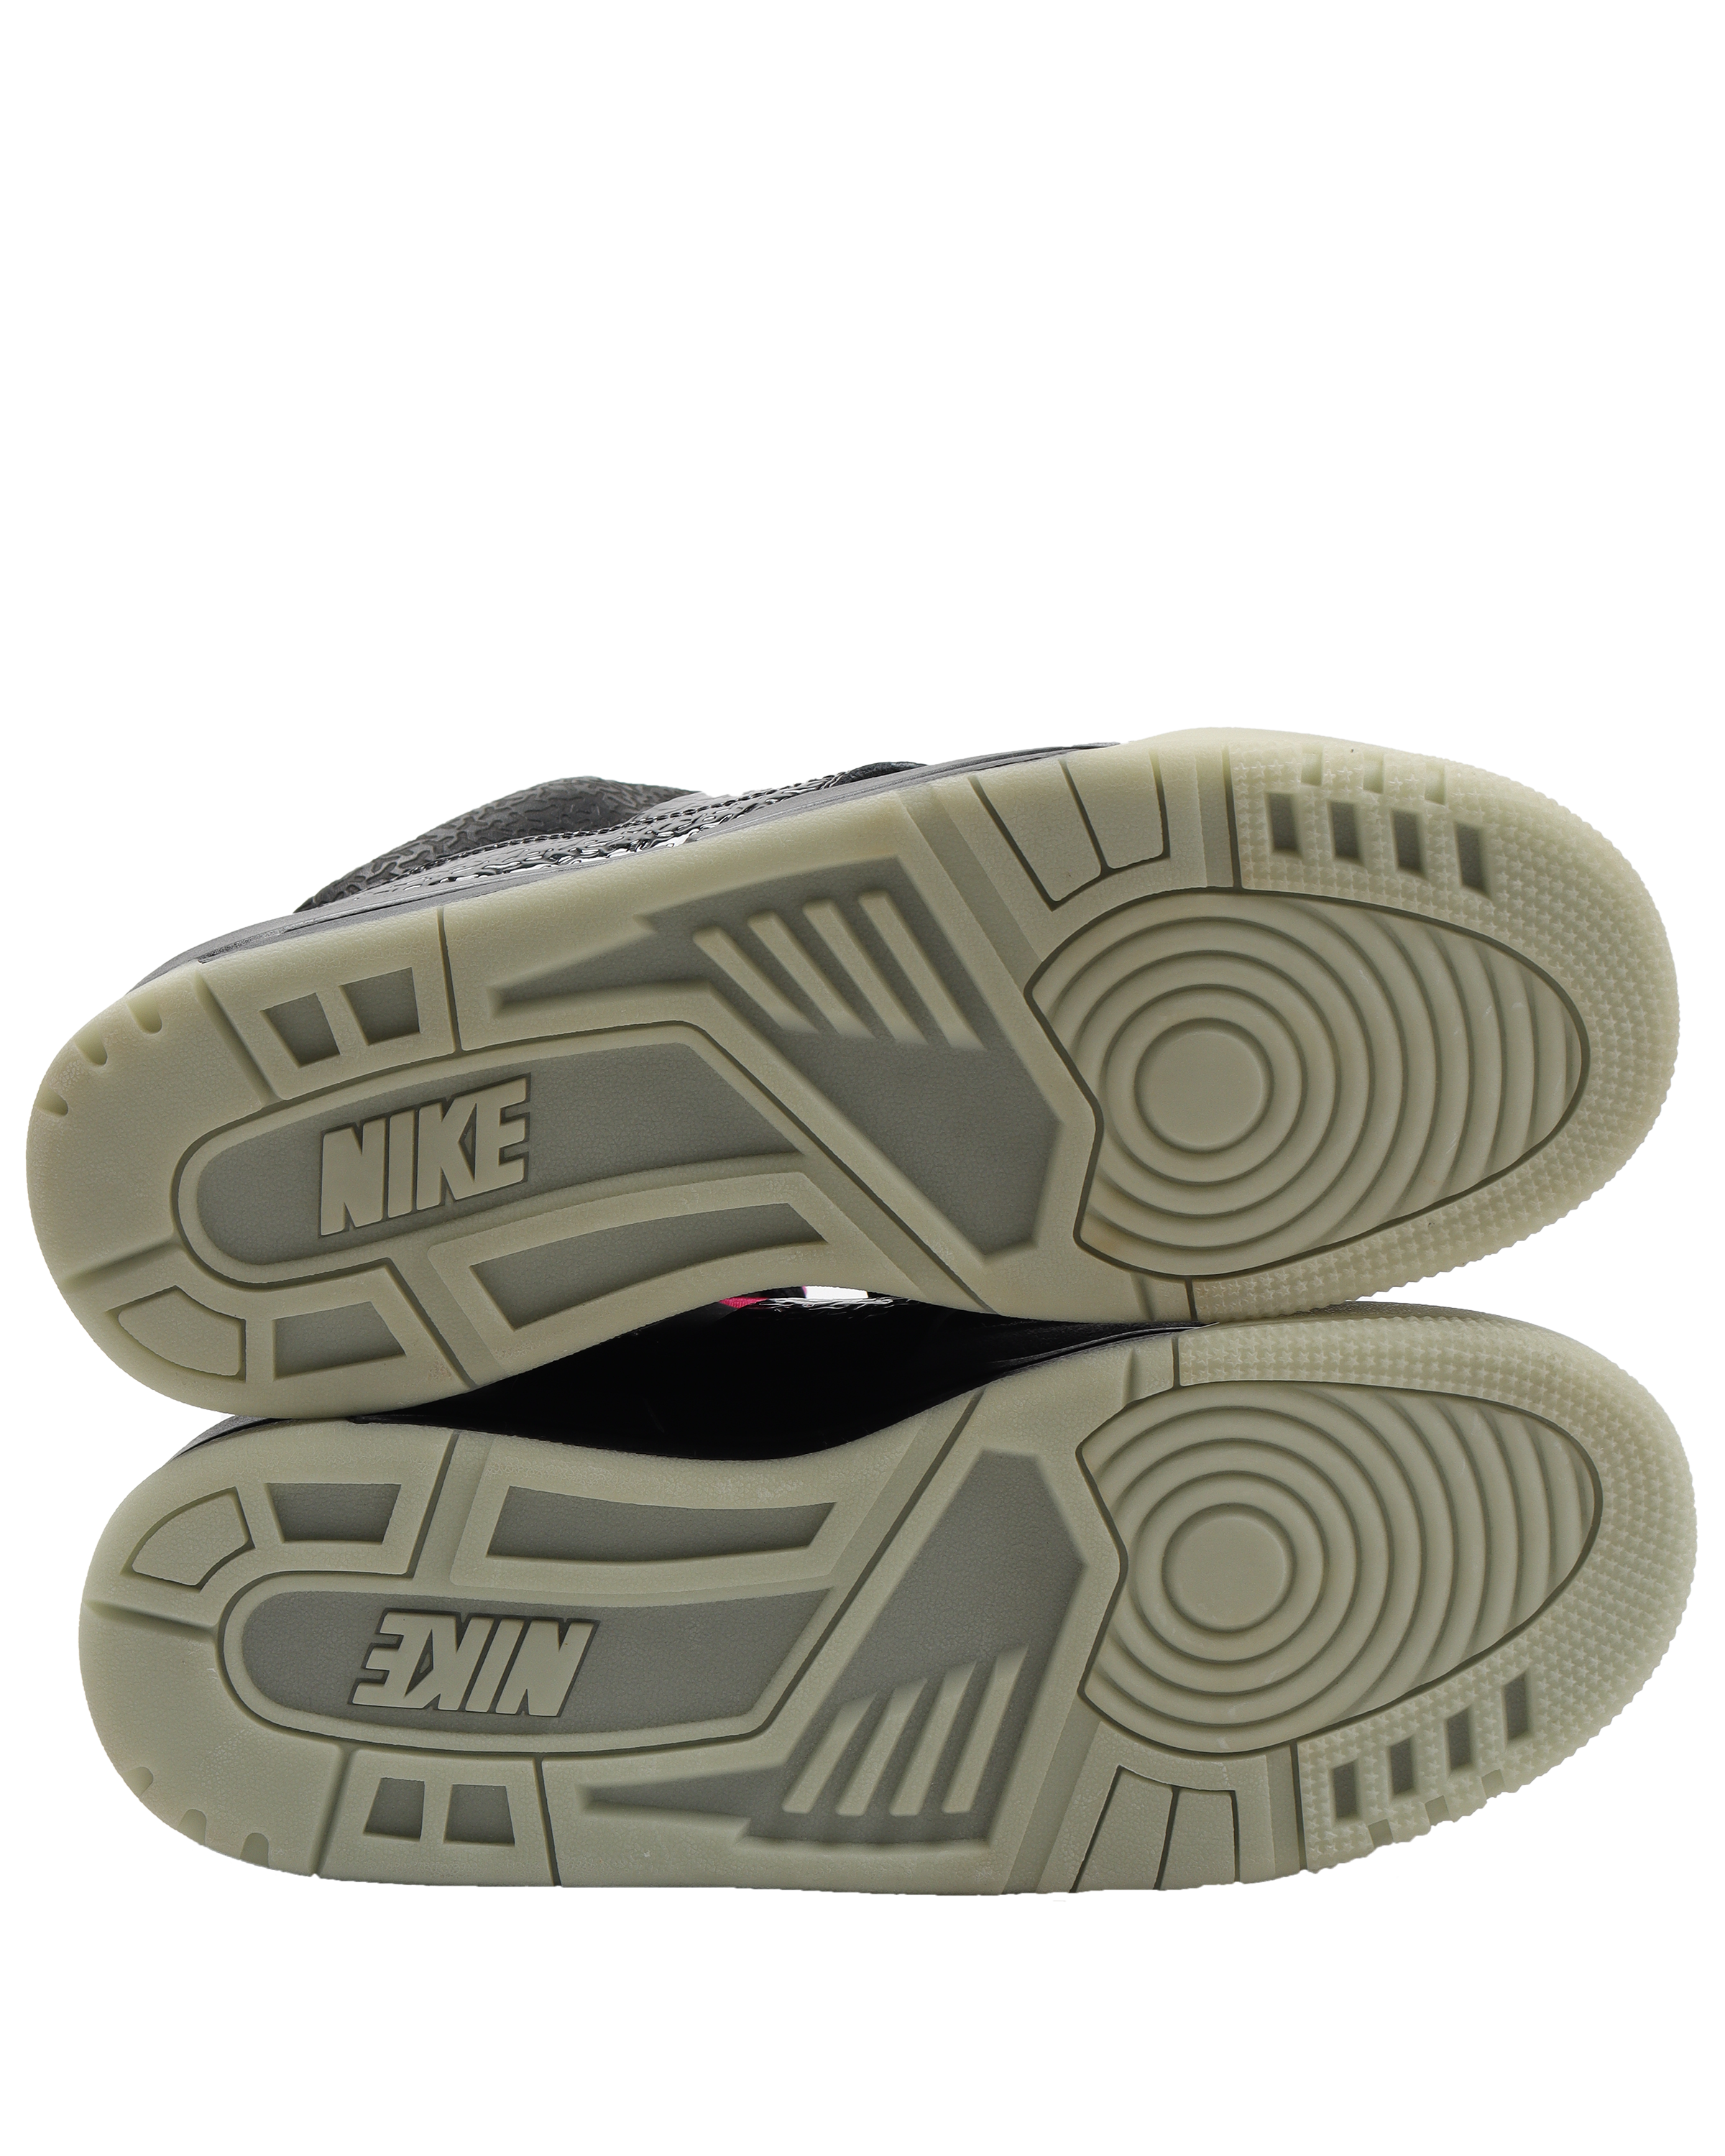 Nike Air Yeezy 1 Blink – Shoepugs